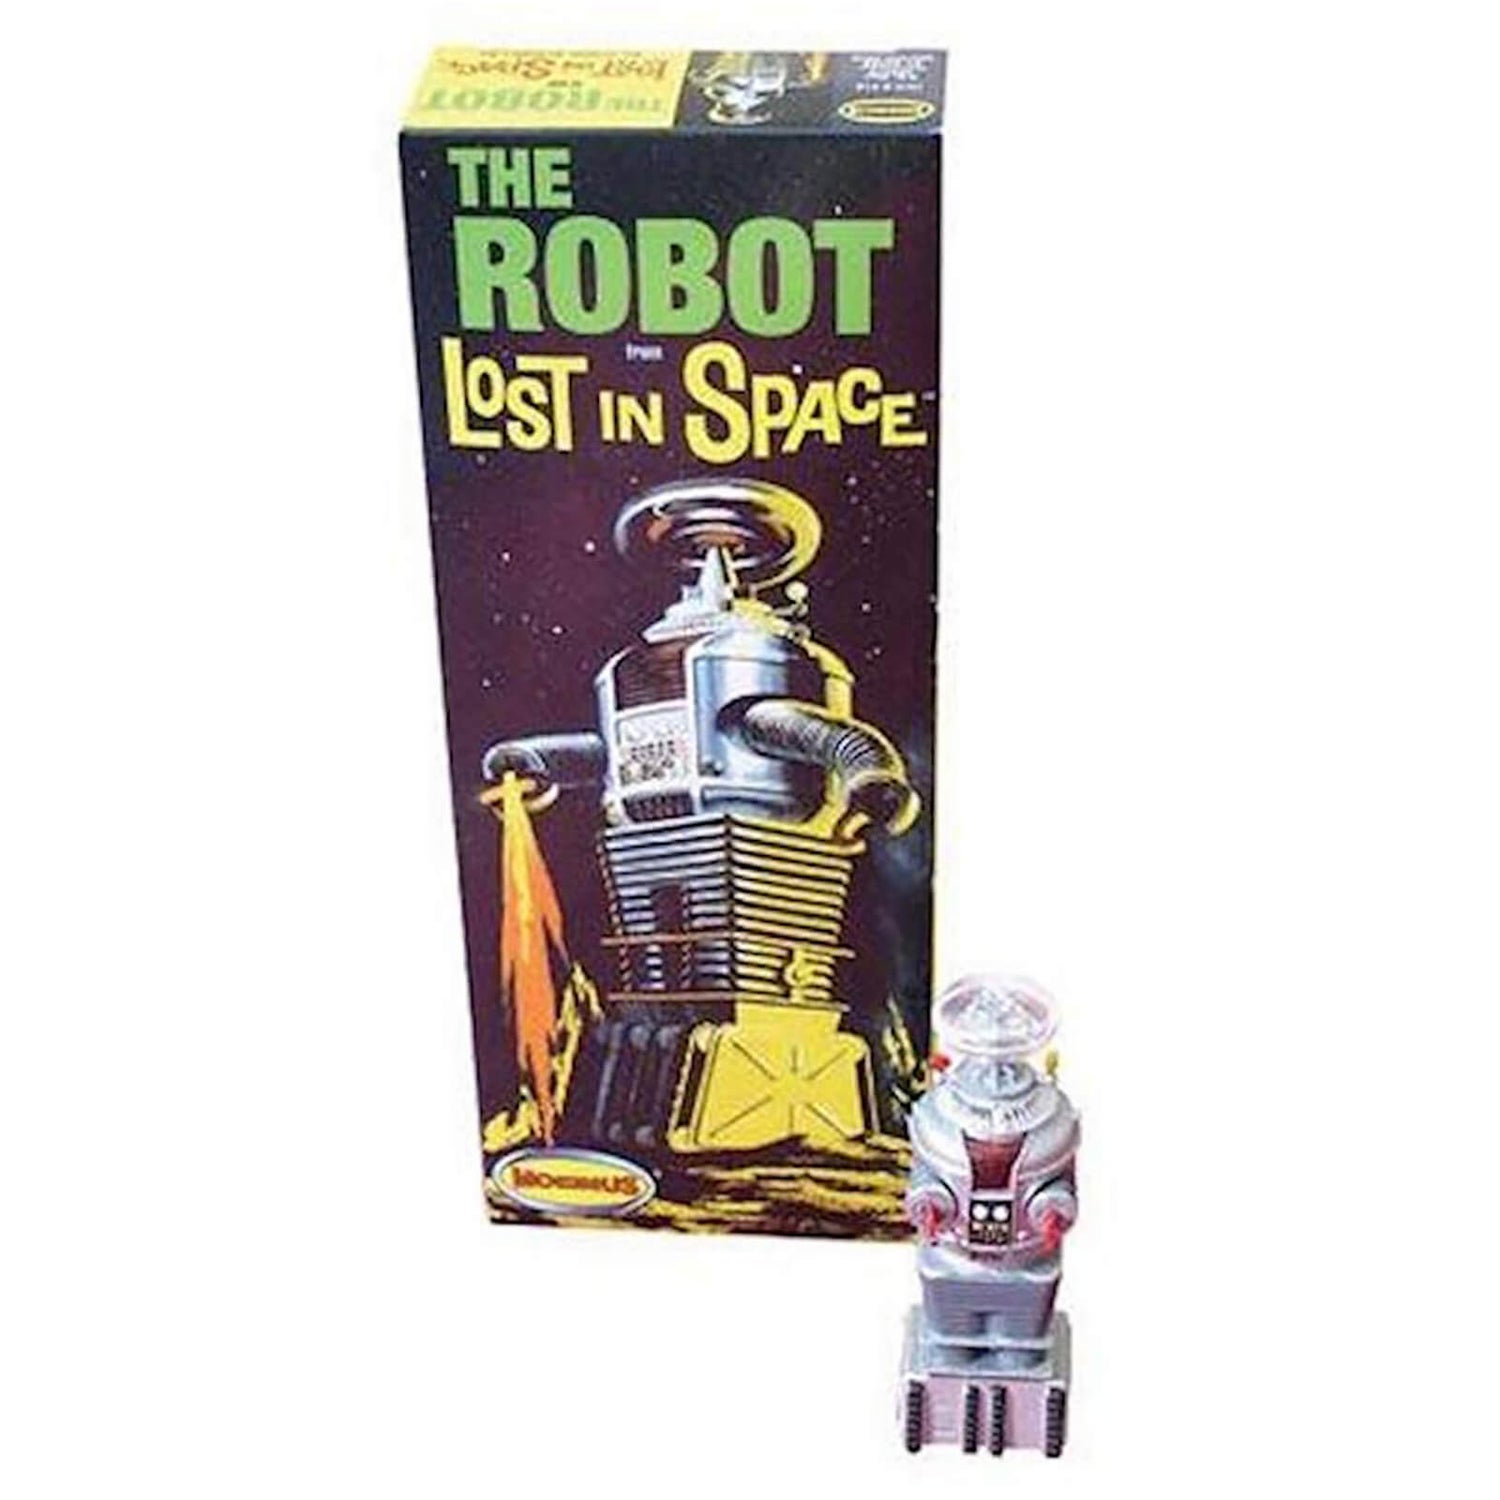 1:24 Lost in Space B9 Robot - Plastic Model Kit